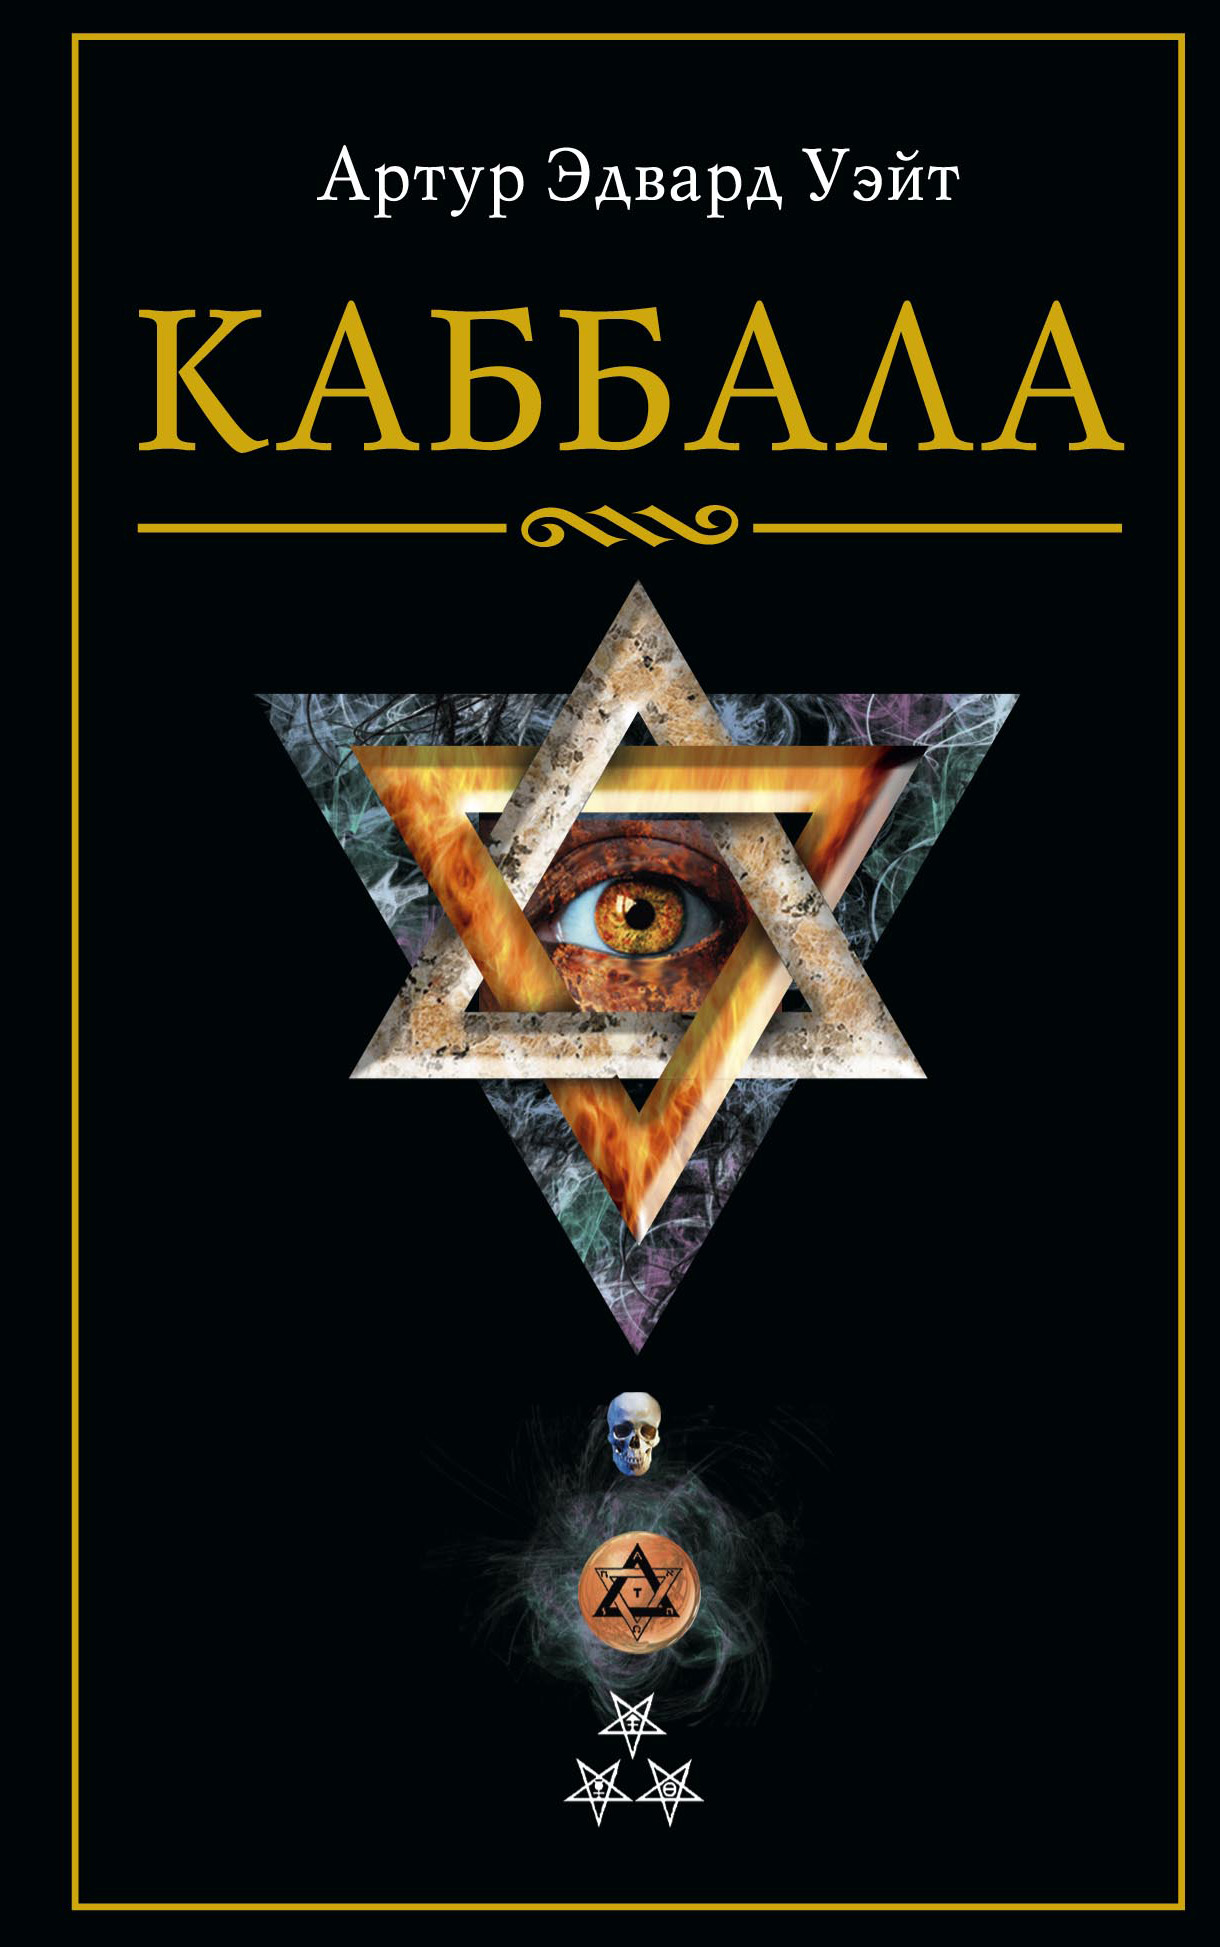 Книга Каббала из серии , созданная Артур Уэйт, может относится к жанру Зарубежная эзотерическая и религиозная литература, Религиоведение, Эзотерика. Стоимость электронной книги Каббала с идентификатором 613415 составляет 149.90 руб.